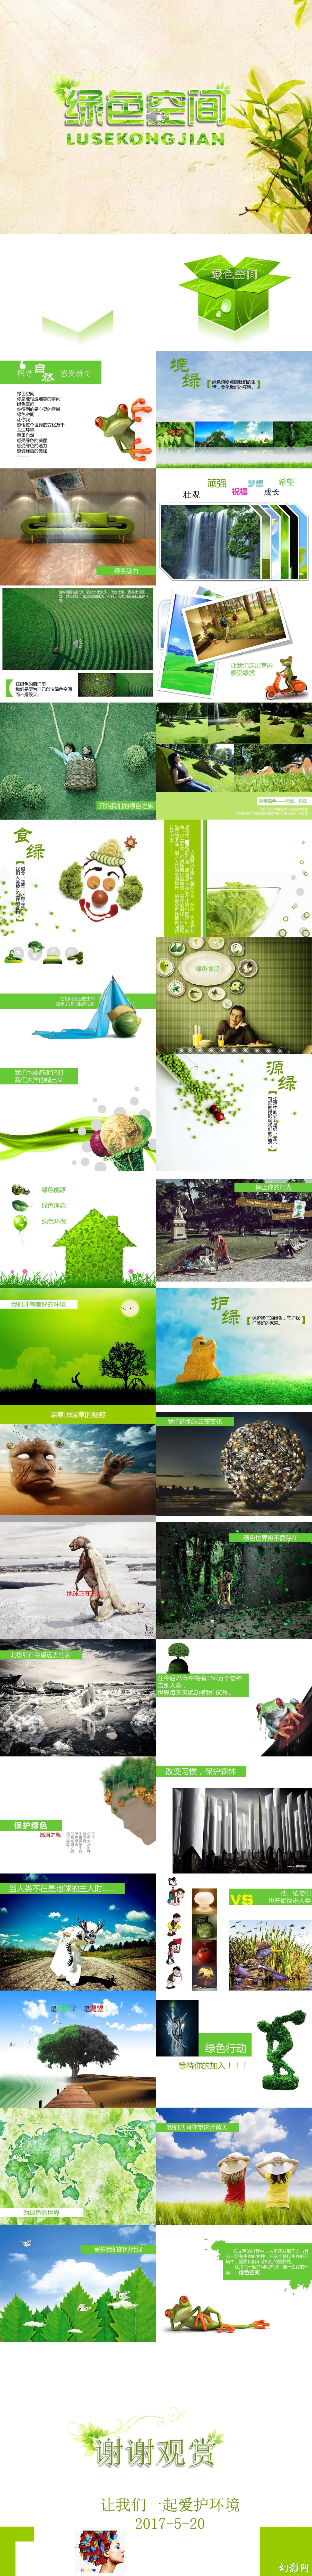 环保宣传绿色空间ppt模板